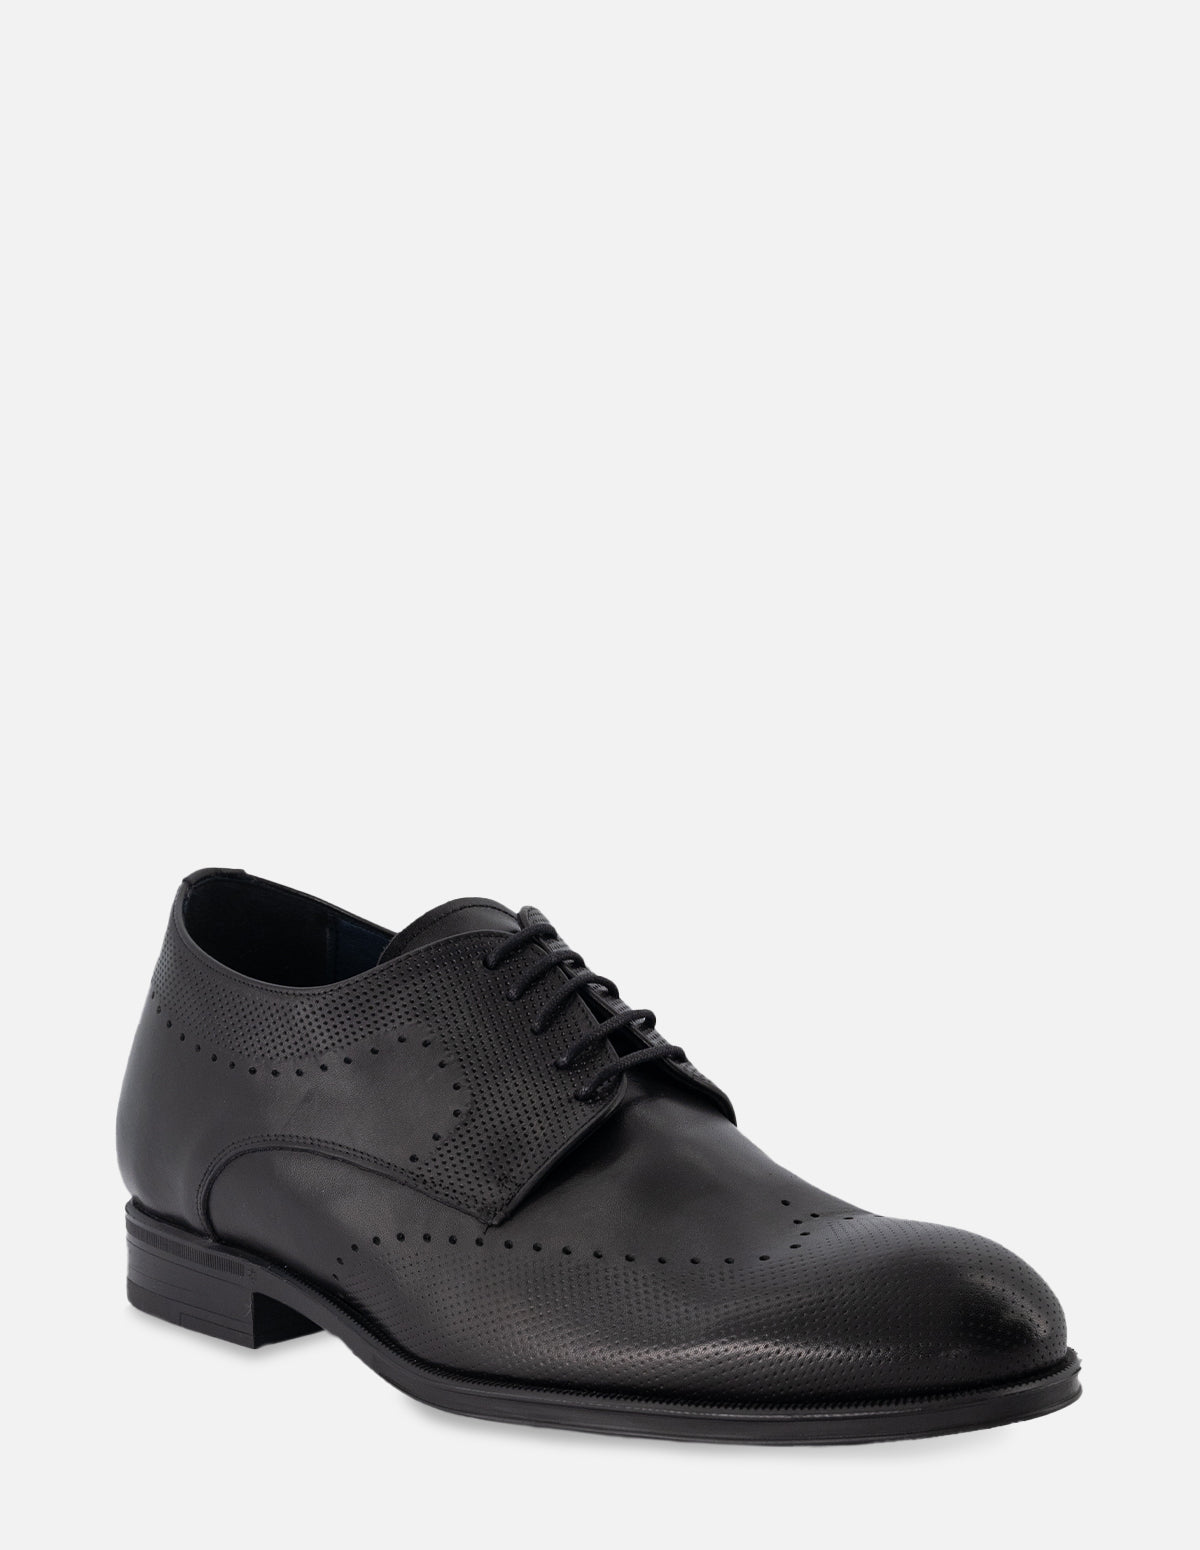 Zapato Blucher +7 en piel color negro con picado para hombre